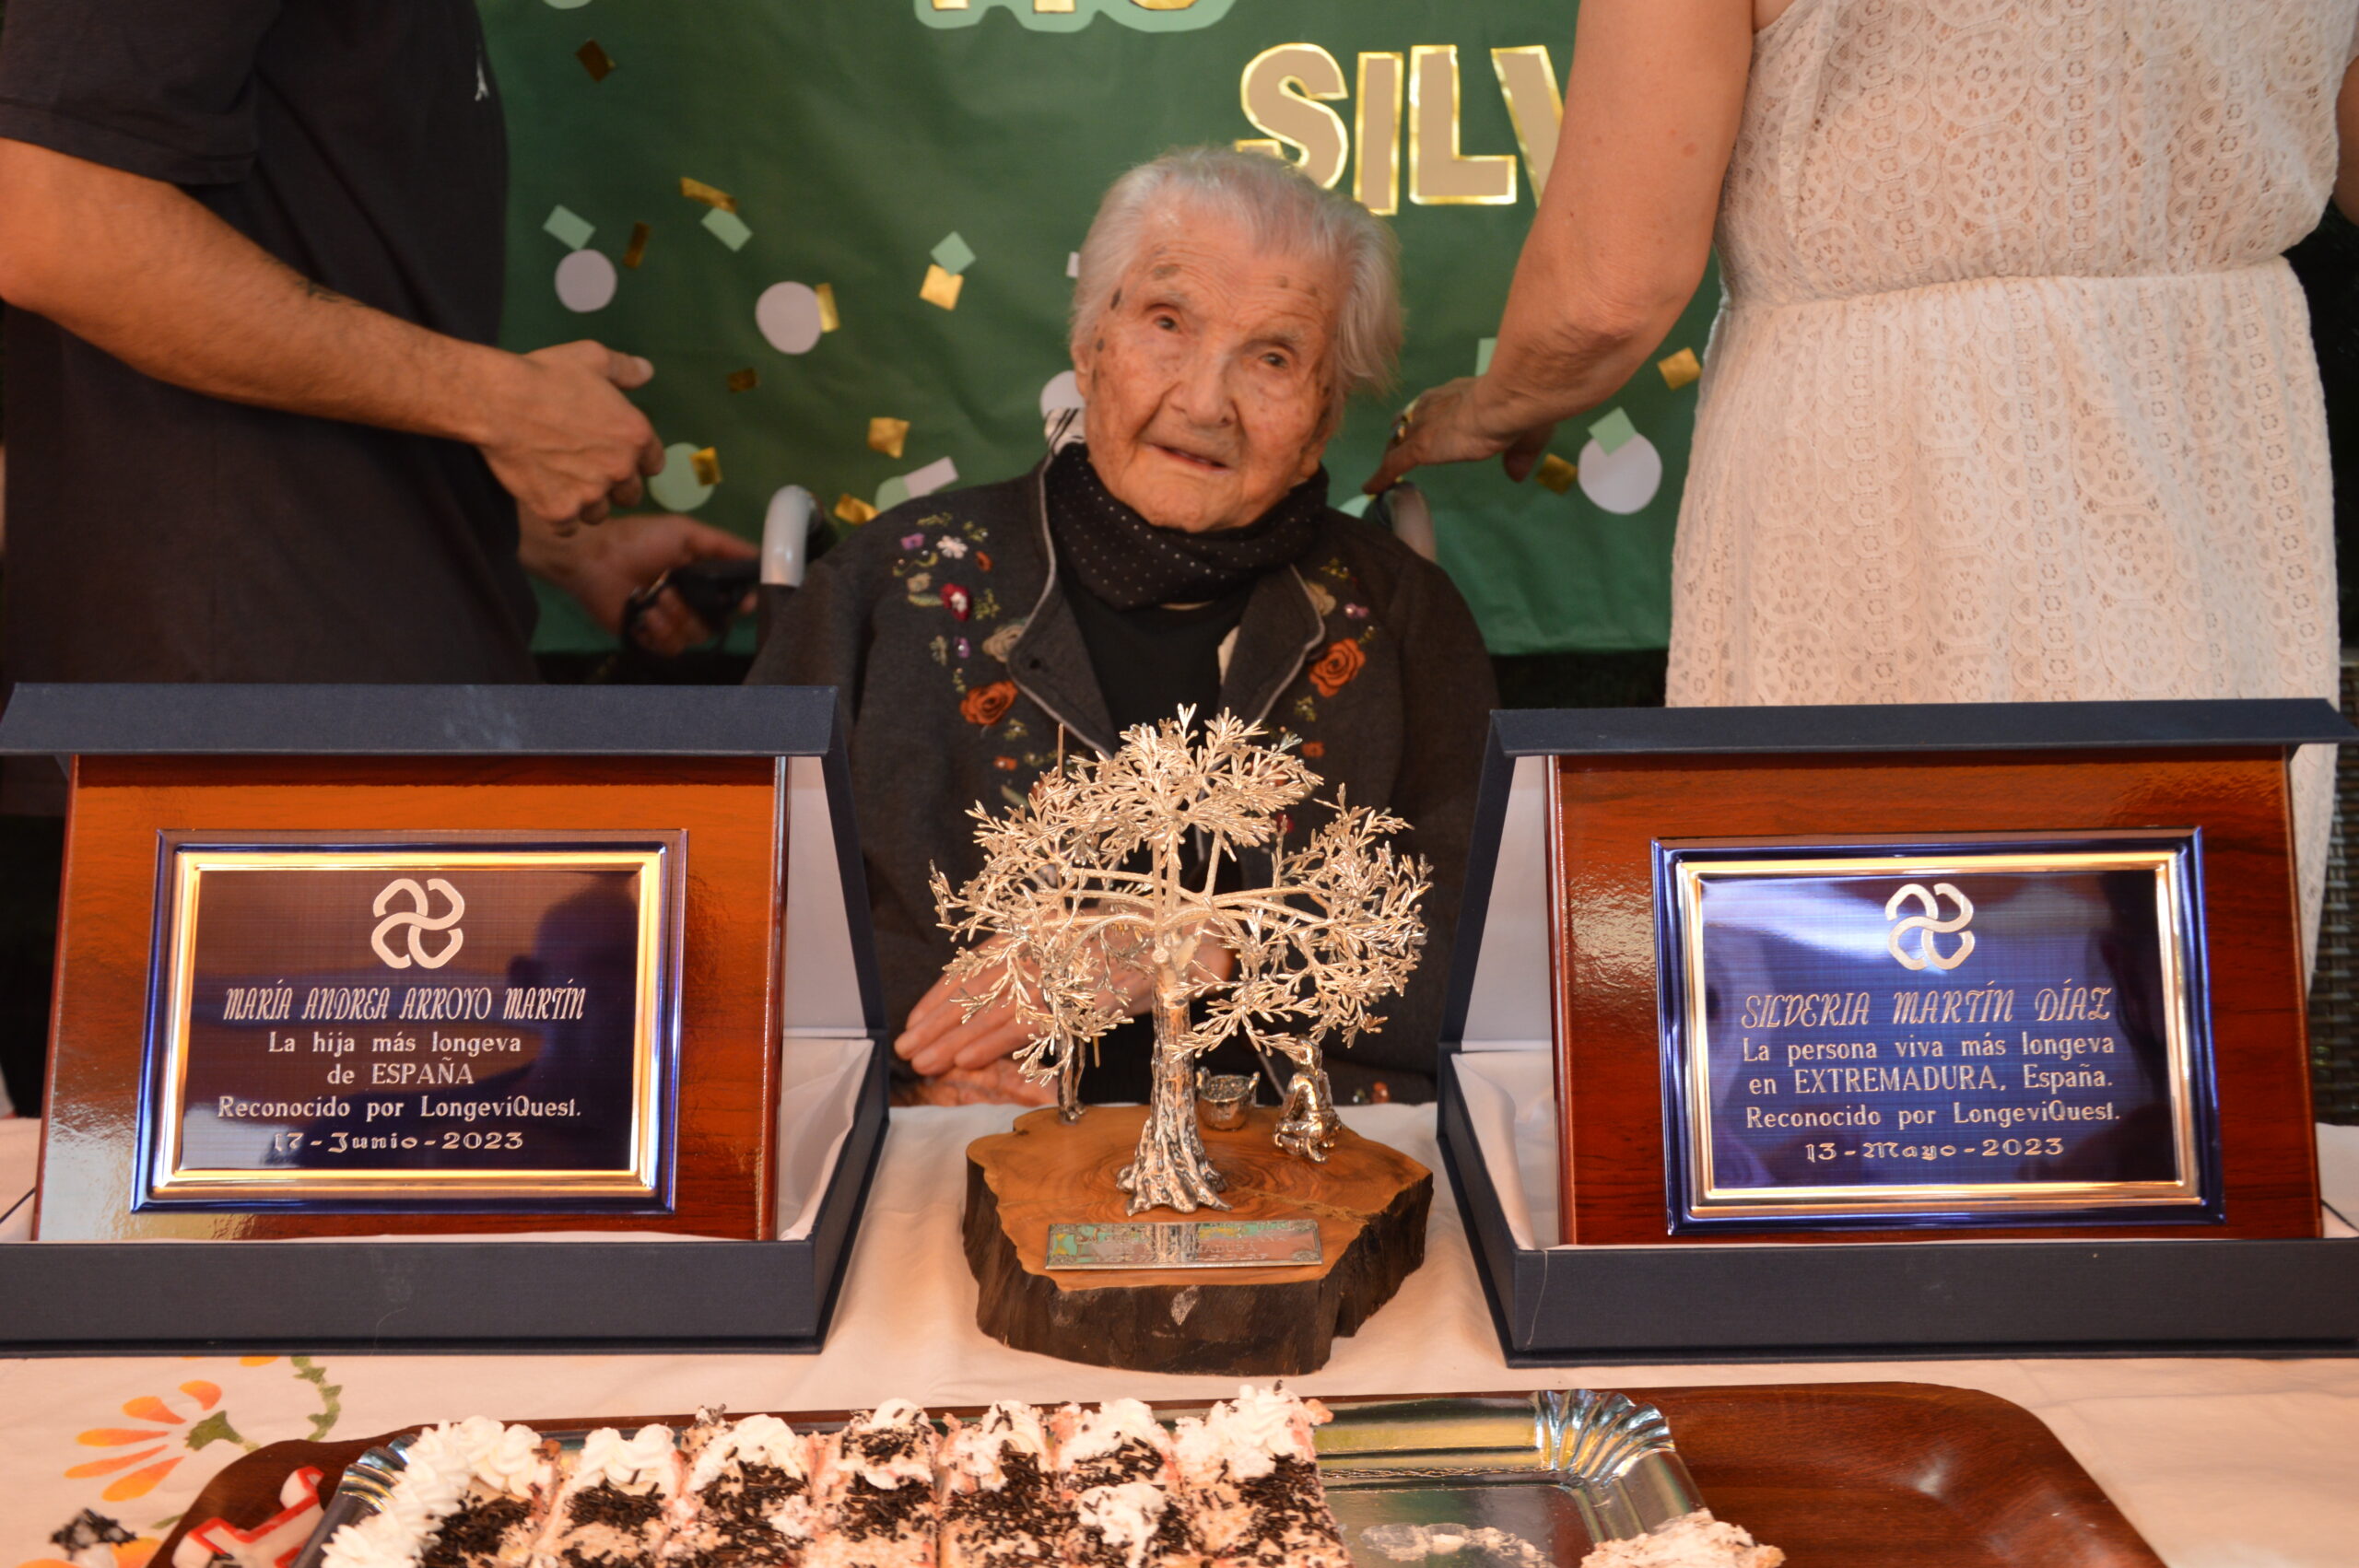 Silveria Martín Díaz, la segunda persona más longeva de España, cumple 113 años